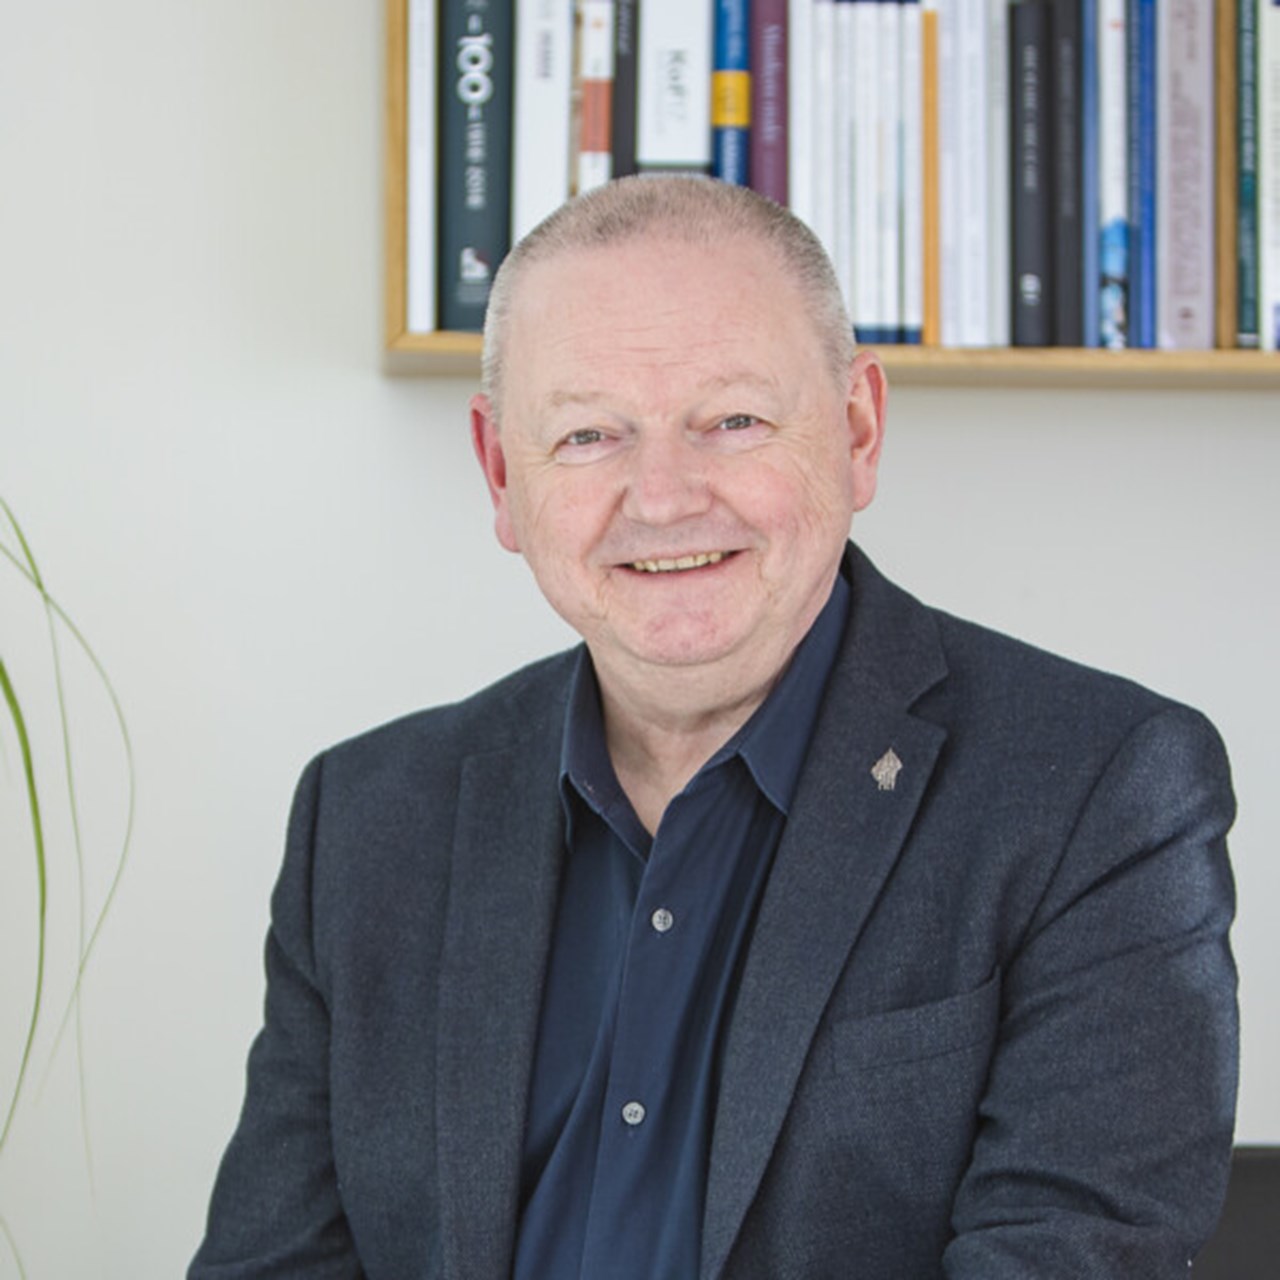 Vice-Chancellor Hans Adolfsson